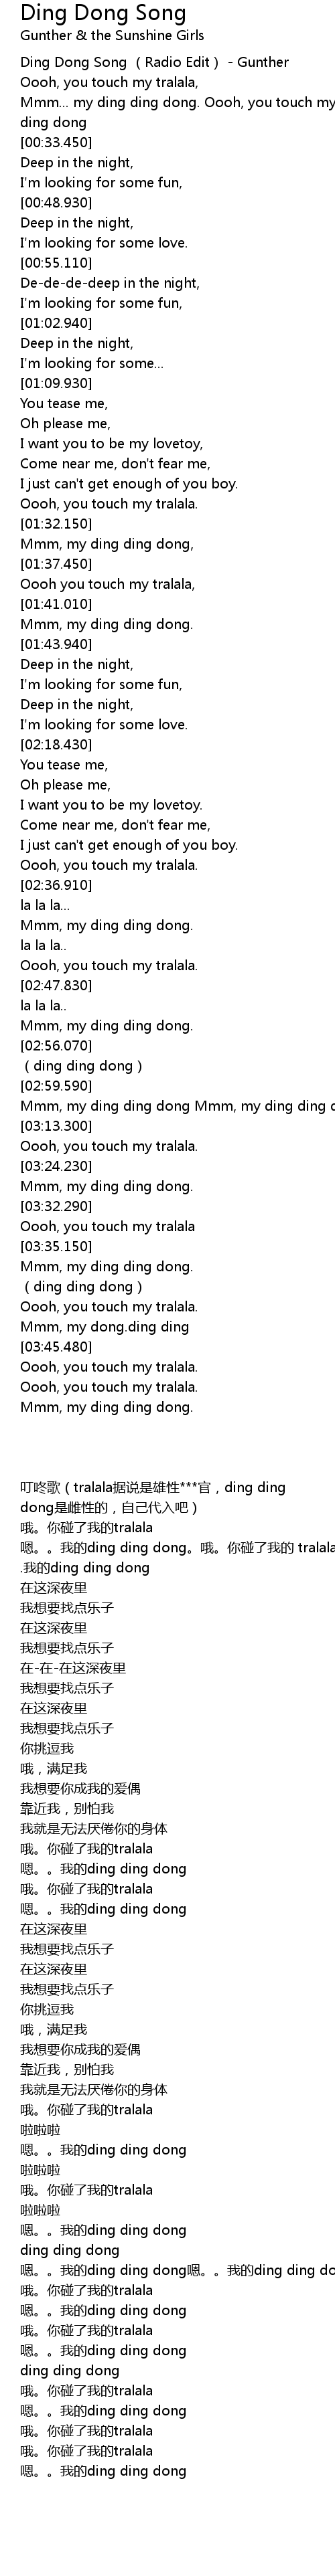 Ding Dong Song Lyrics Follow Lyrics